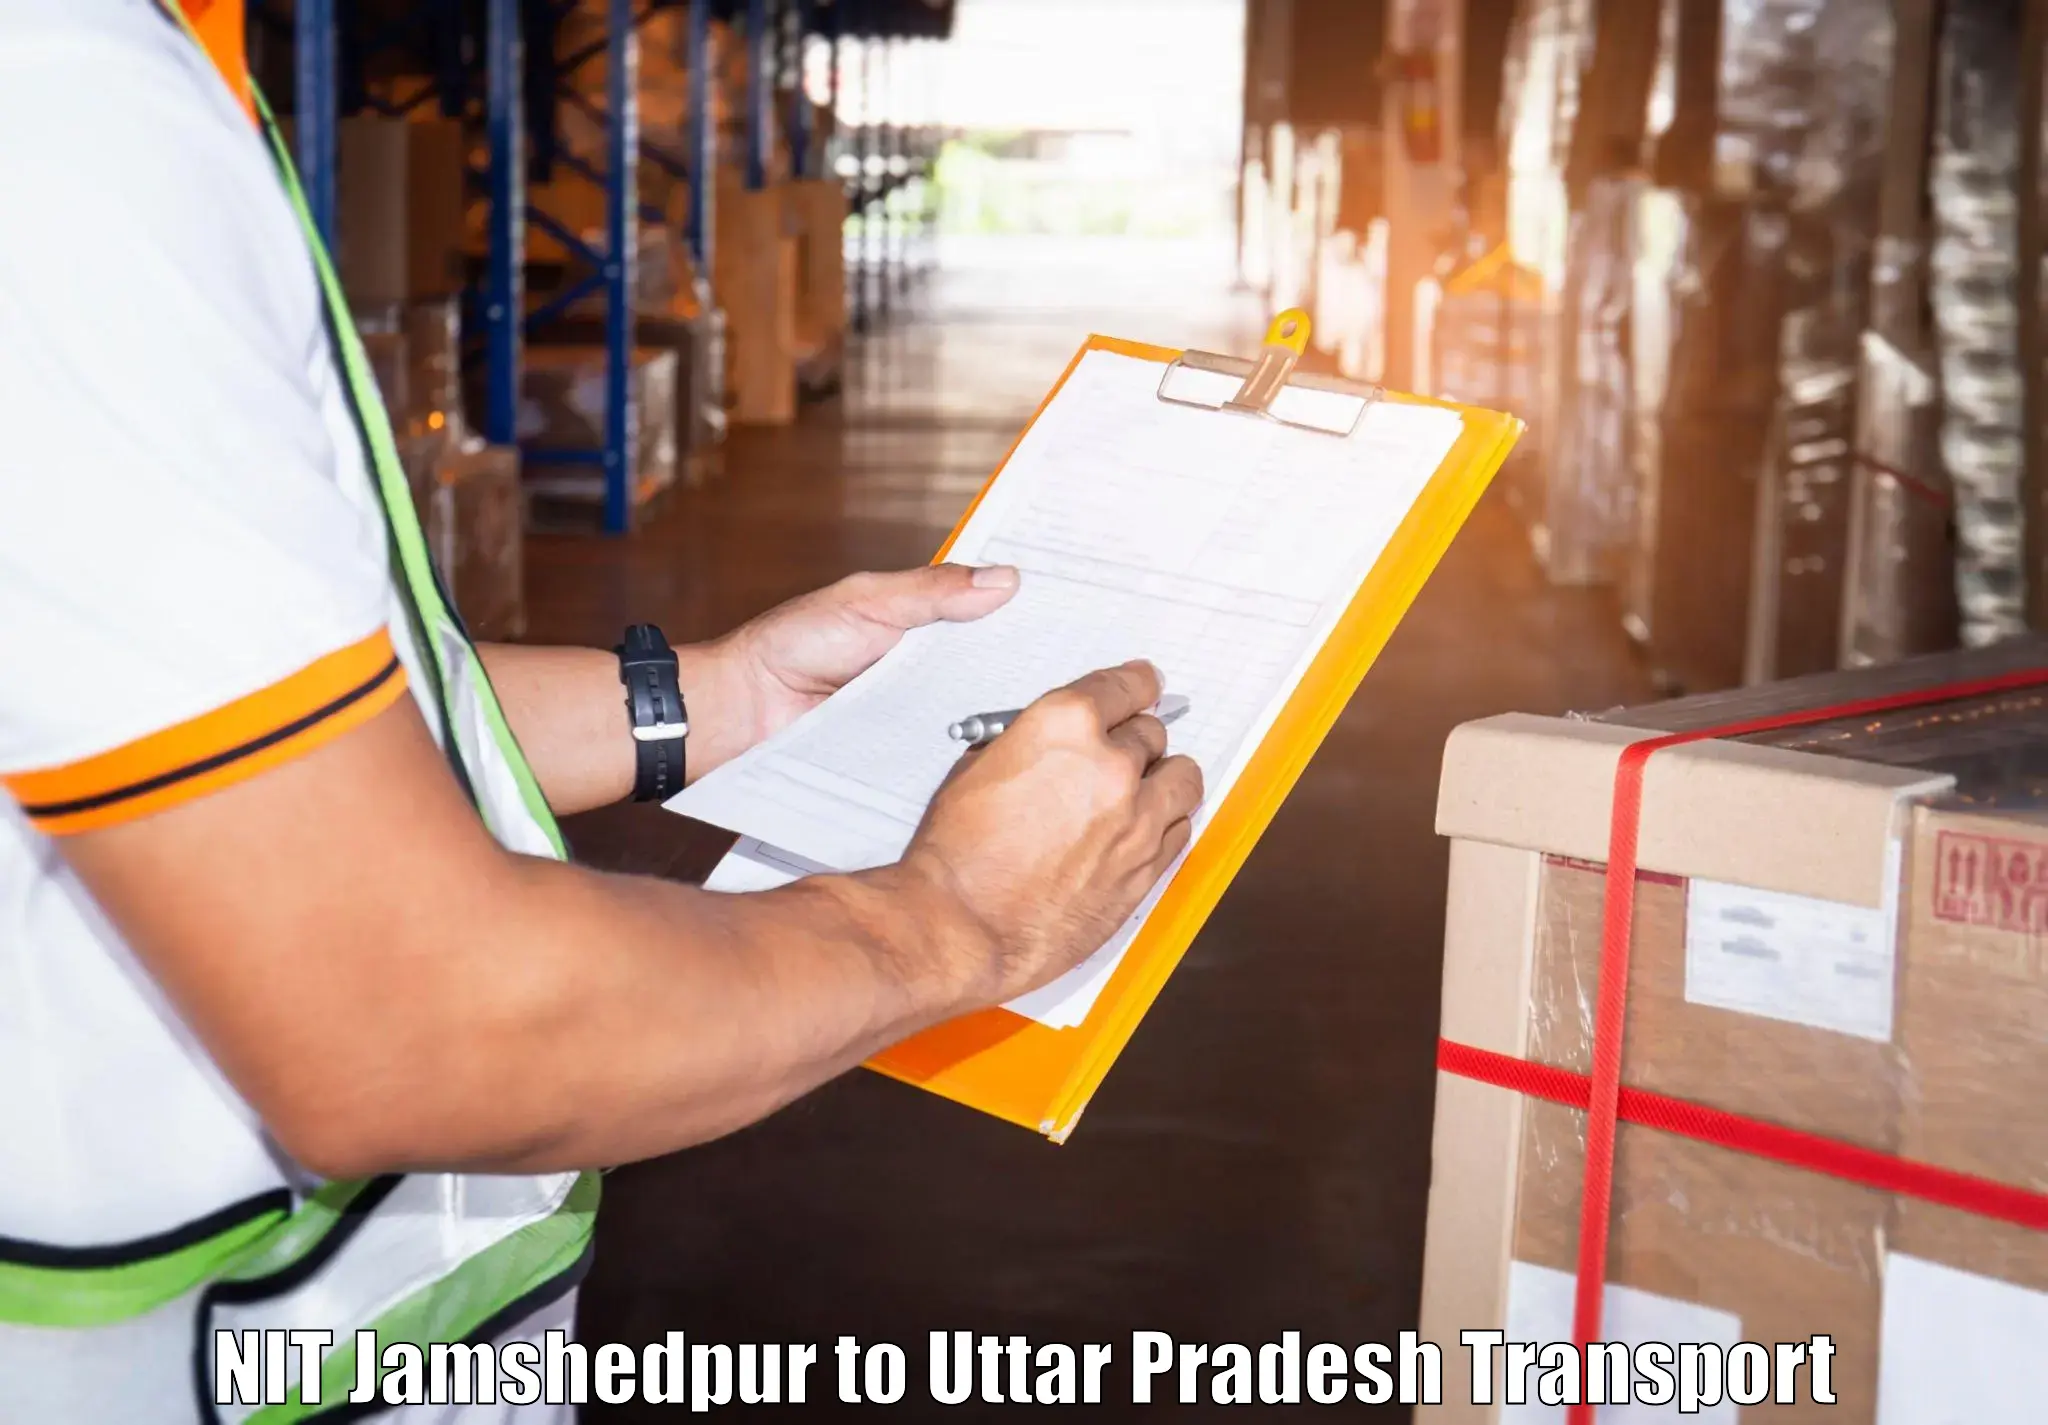 Parcel transport services NIT Jamshedpur to Uttar Pradesh